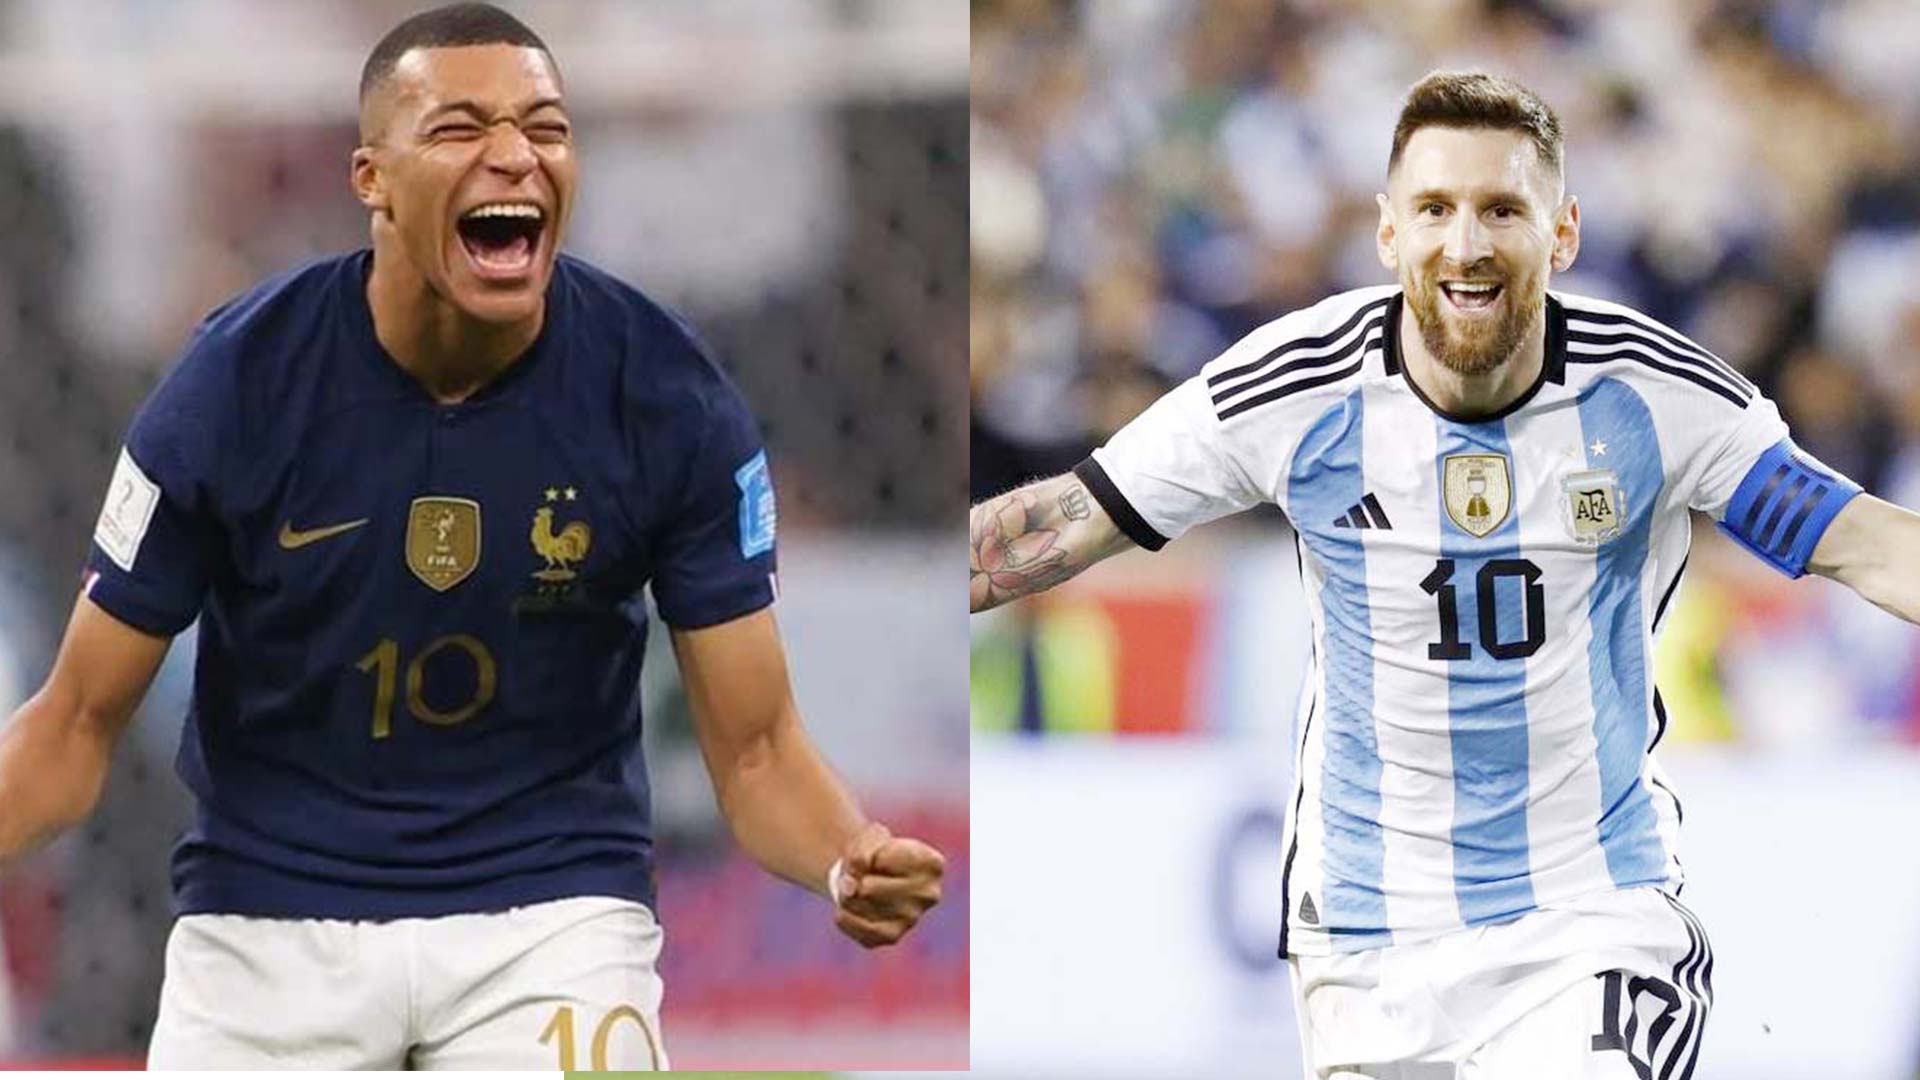 Messi và Mbappe là hai ngôi sao bóng đá lớn trong giới thể thao. Hãy xem những bức ảnh hài hước về họ và cùng tận hưởng niềm vui từ bóng đá. Ngoài ra, còn có ảnh đẹp về Bình Phước nữa đấy.